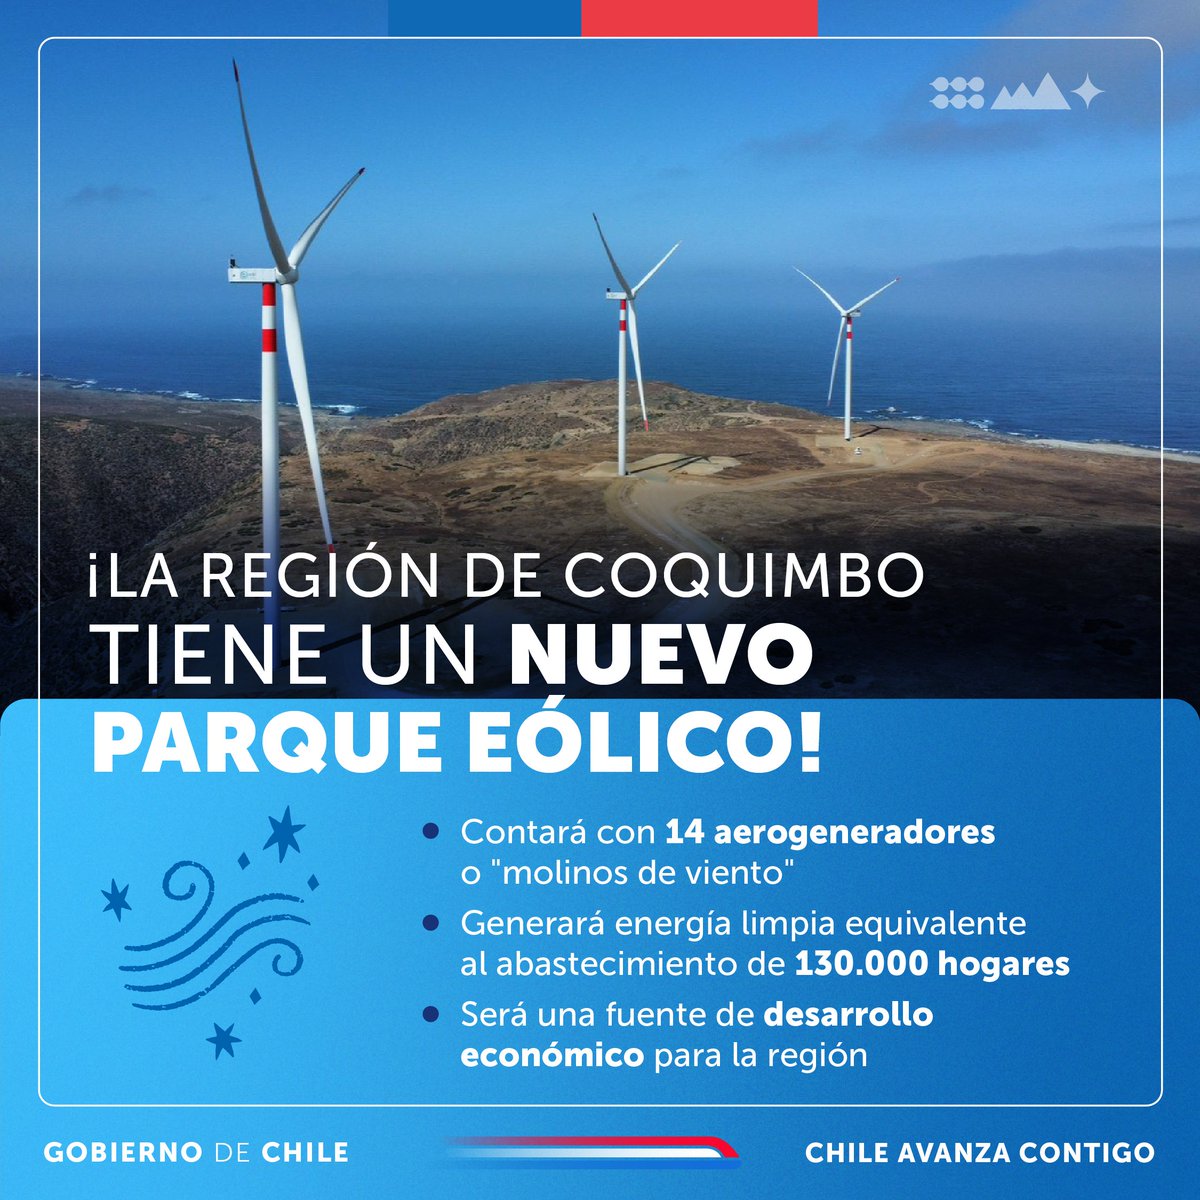 ¡Sumamos más #EnegíasLimpias en la región de Coquimbo! ⚡️ Hoy se inauguró el Parque Eólico Punta de Talca, que consta con 14 nuevos aerogeneradores. Un nuevo hito en la generación de energías renovables, gracias a la colaboración público - privada.